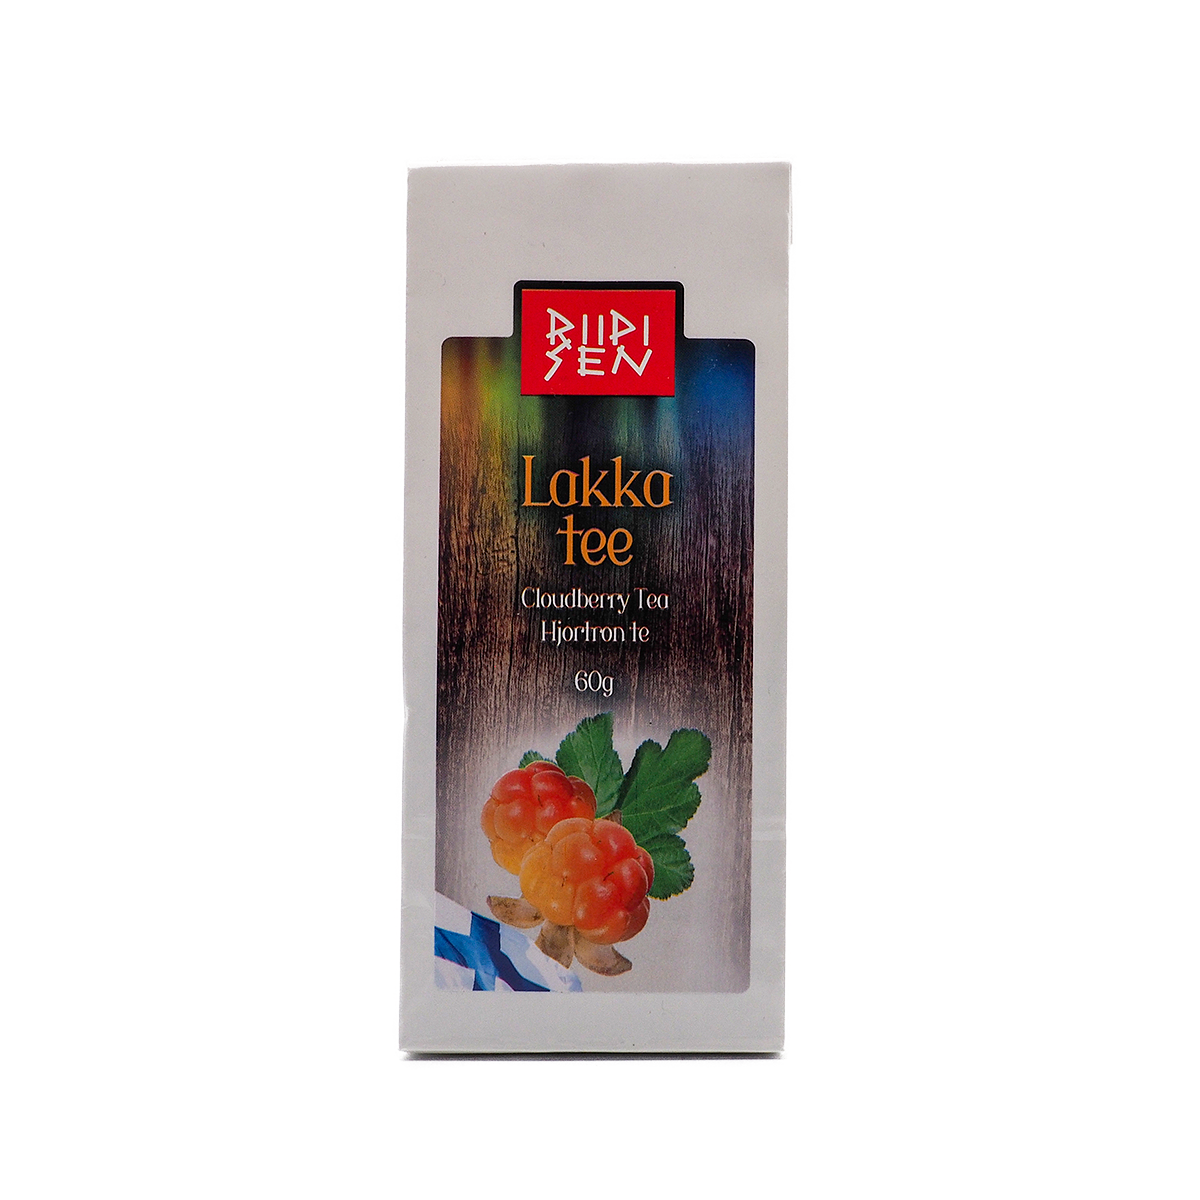 Riipisen Cloudberry Tea